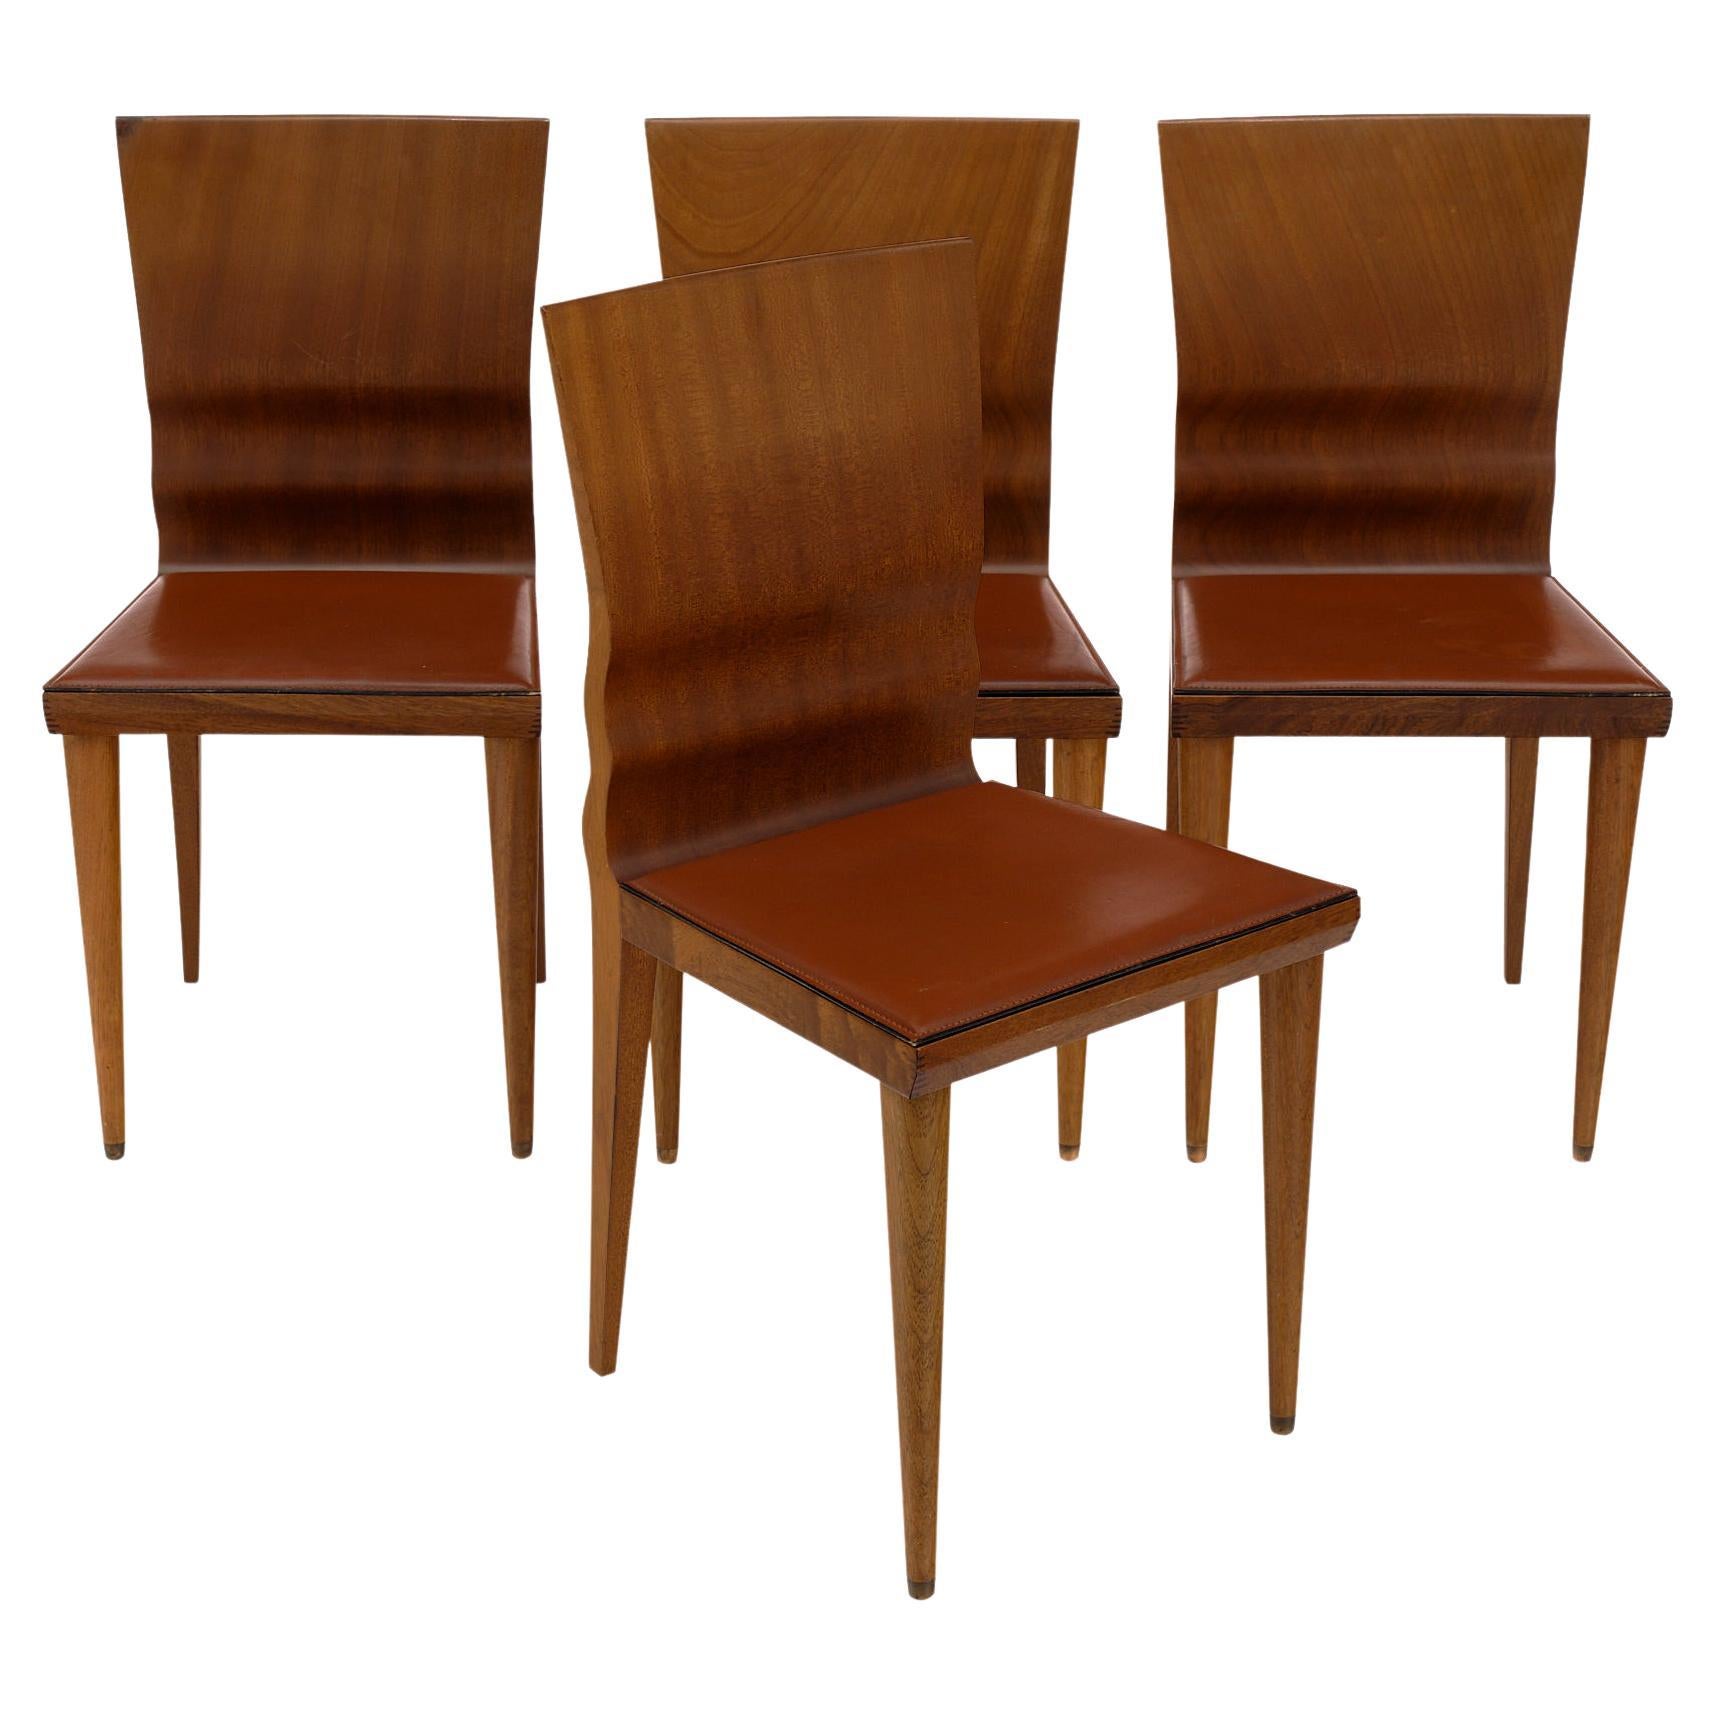 Set of Four 'Diva' Chairs by William Sawaya, Sawaya & Moroni